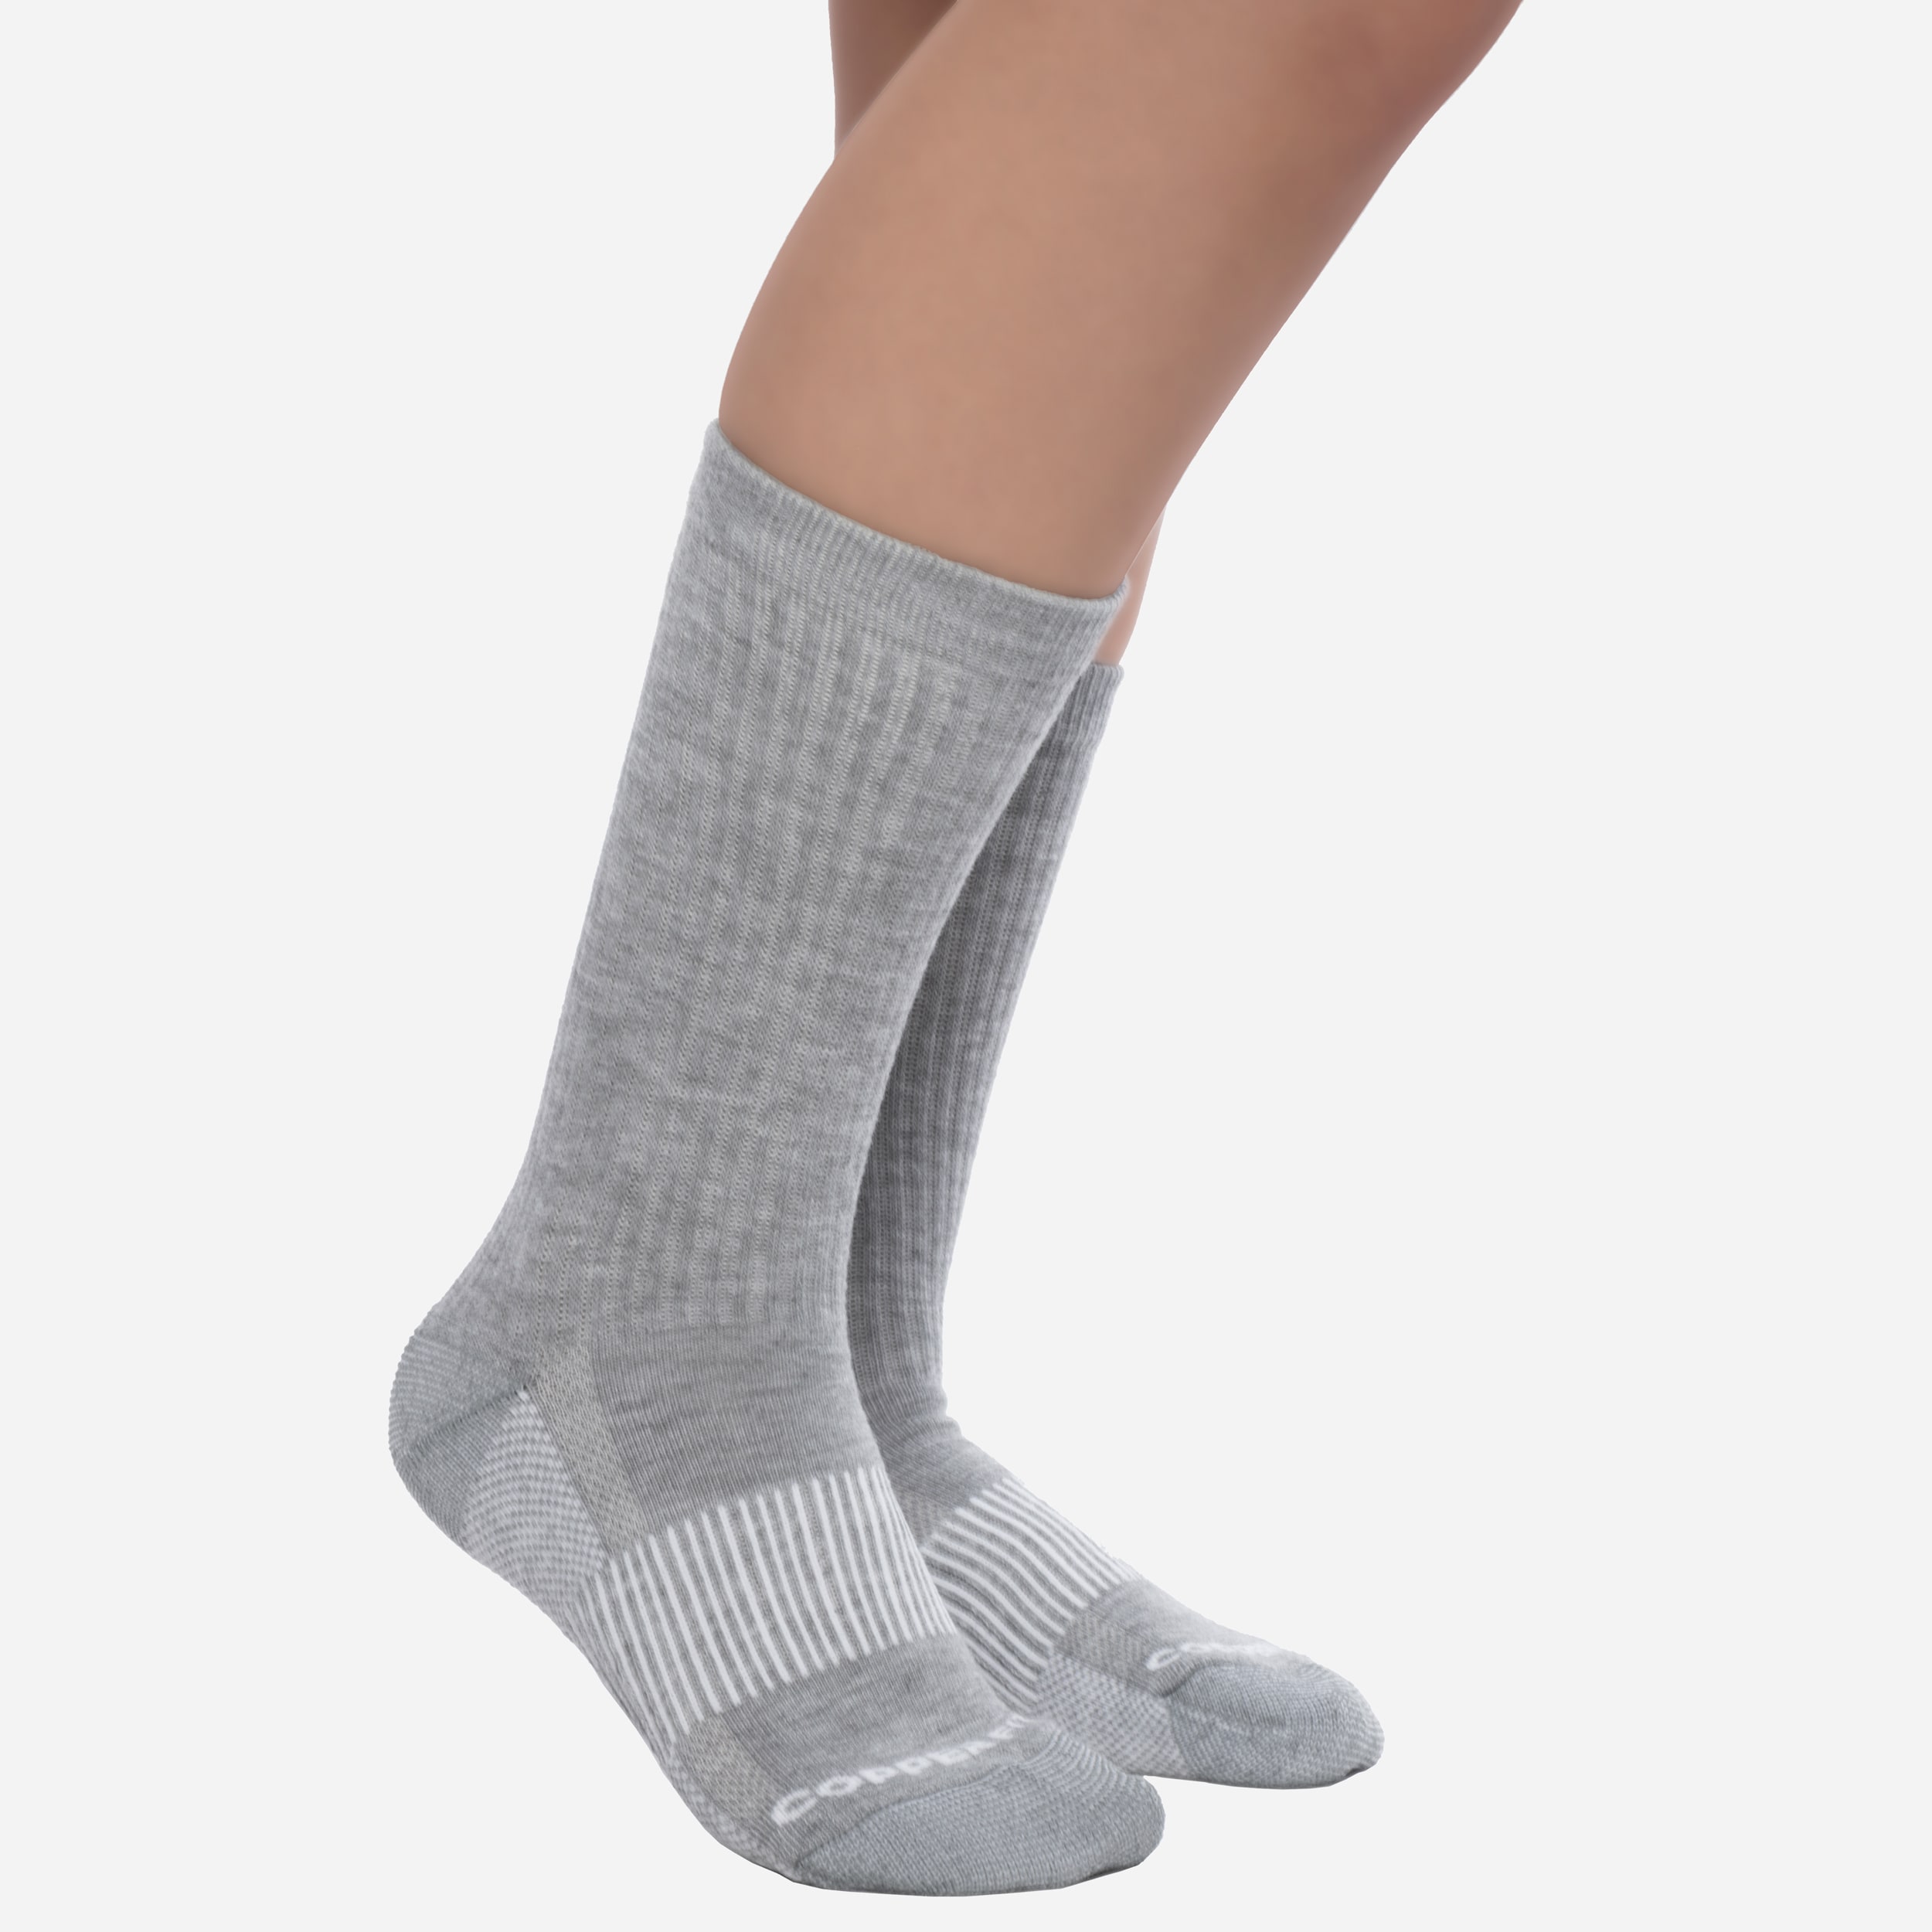 Copper Fit Unisex Polyester Blend Socks (2-Pack) in the Socks ...